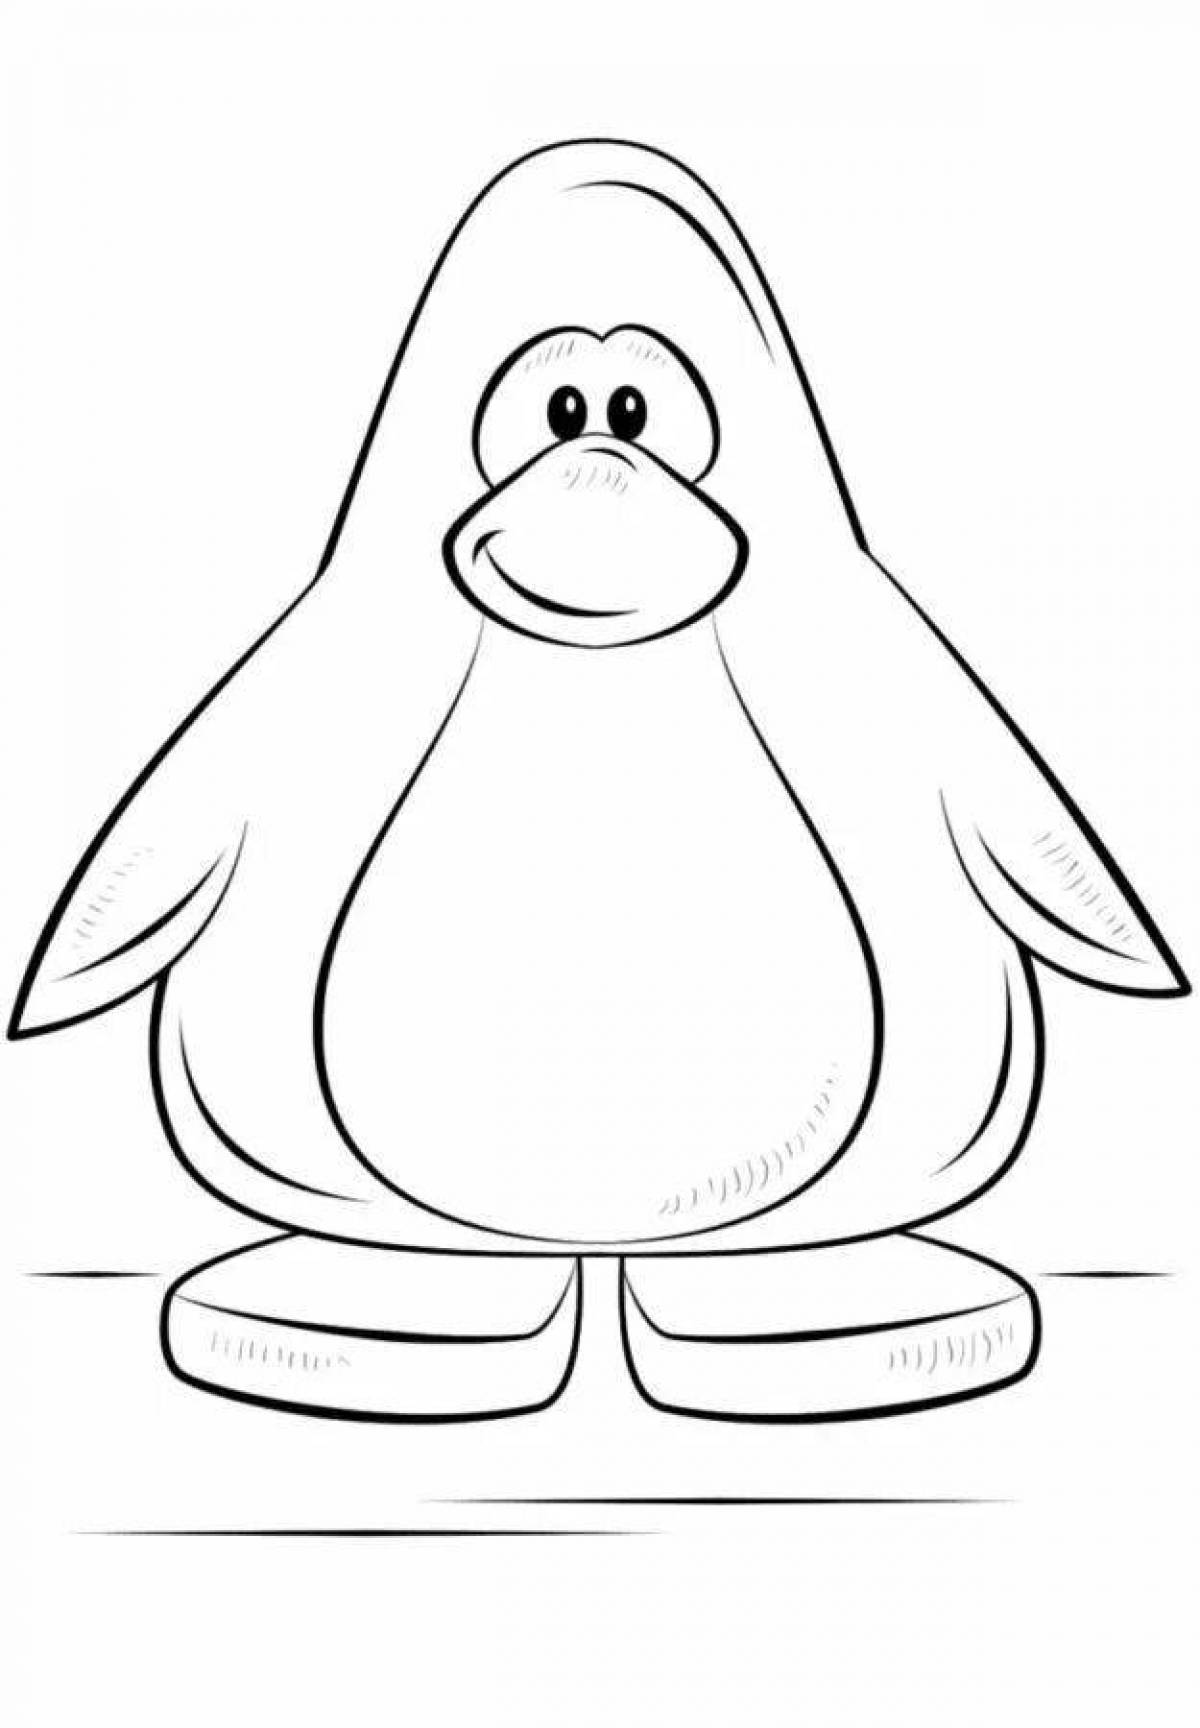 Веселый рисунок пингвина для детей